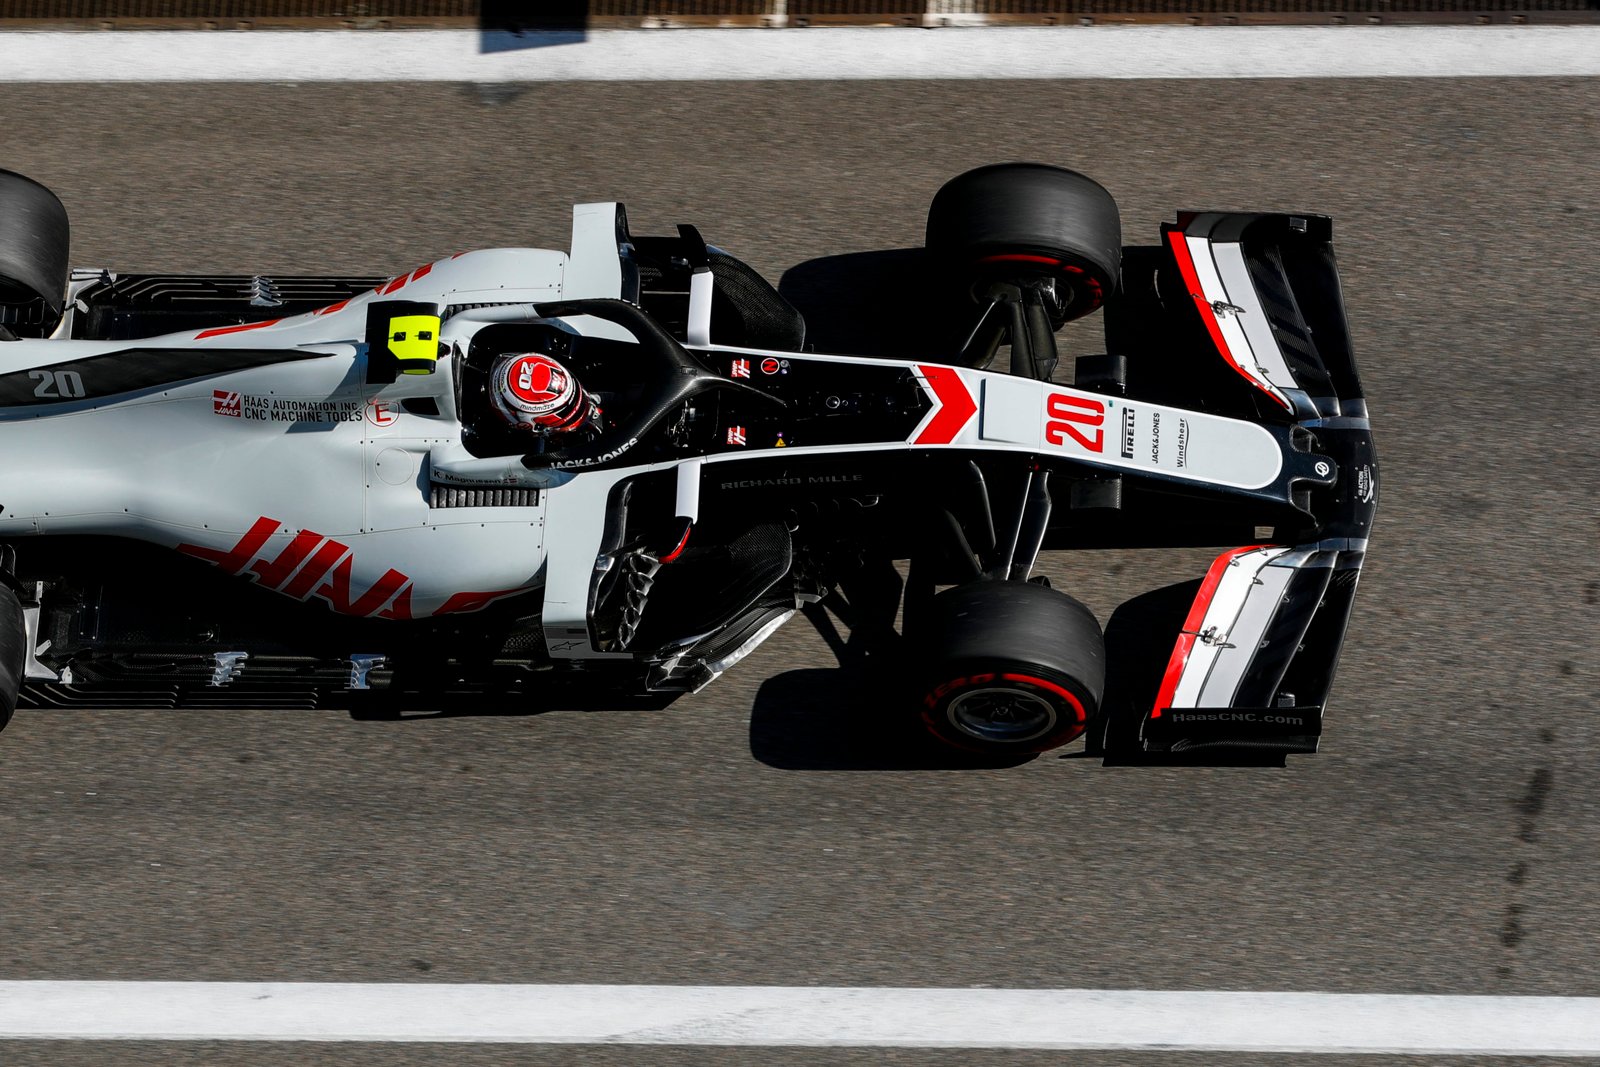 GP da Rússia - Kavin Magnussen teve o melhor desempenho com a Haas - Foto: Haas F1 Media